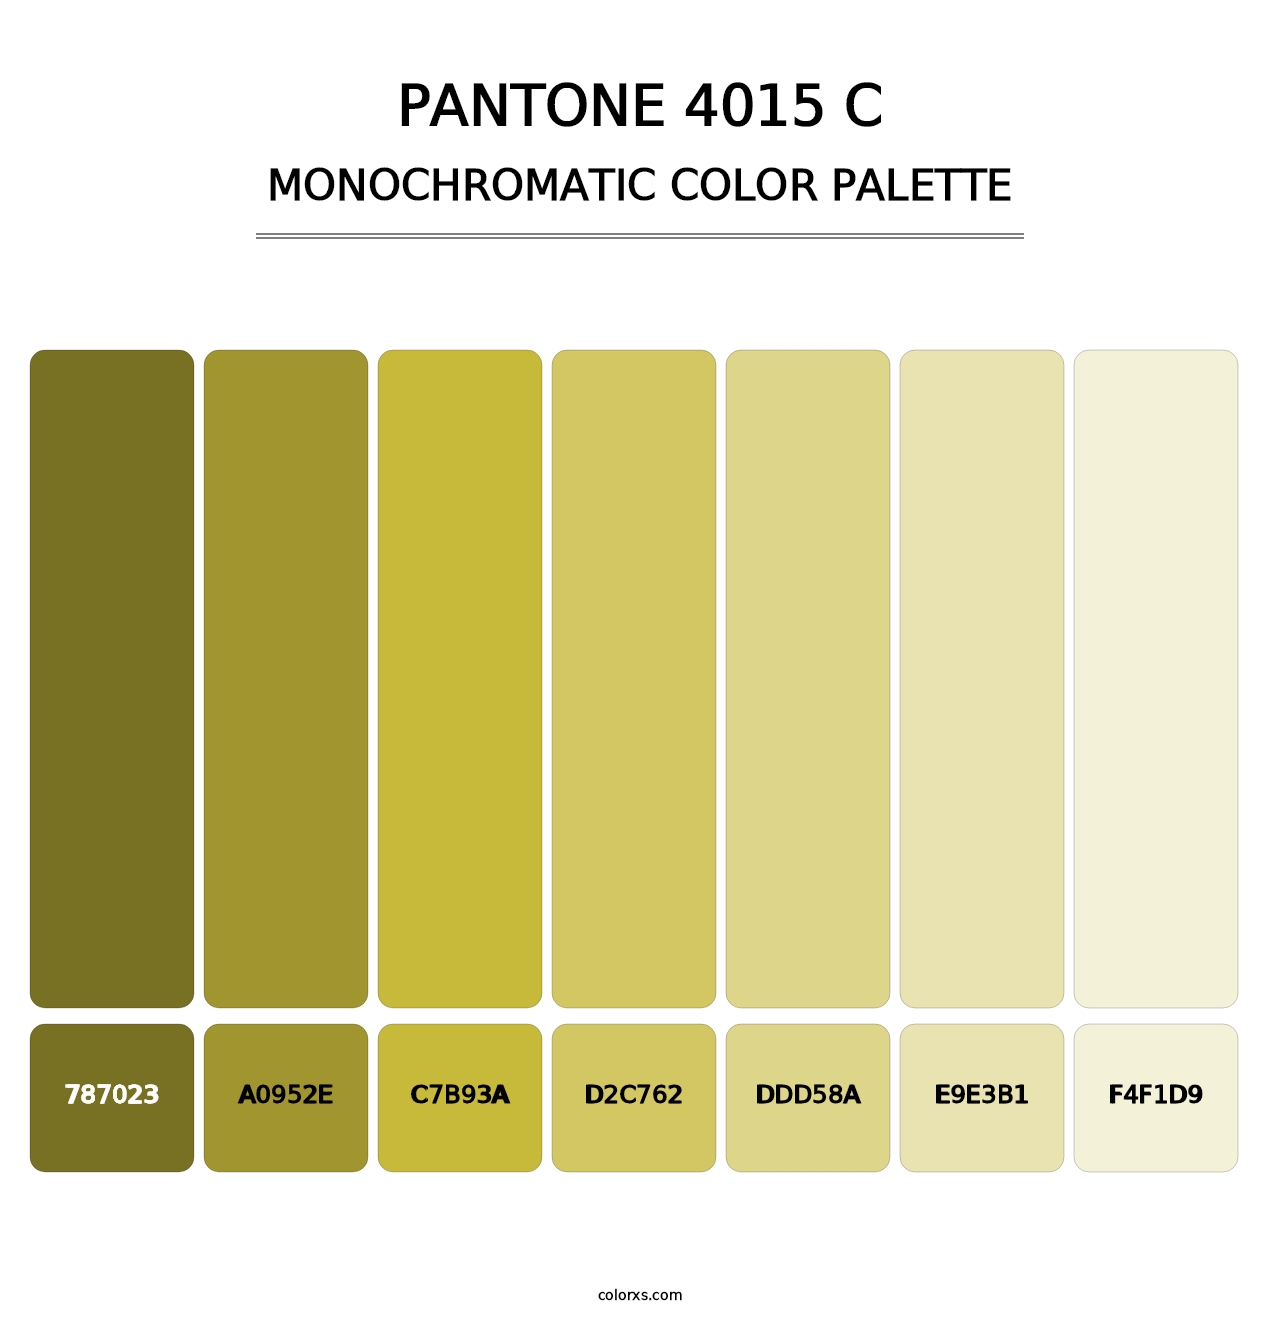 PANTONE 4015 C - Monochromatic Color Palette